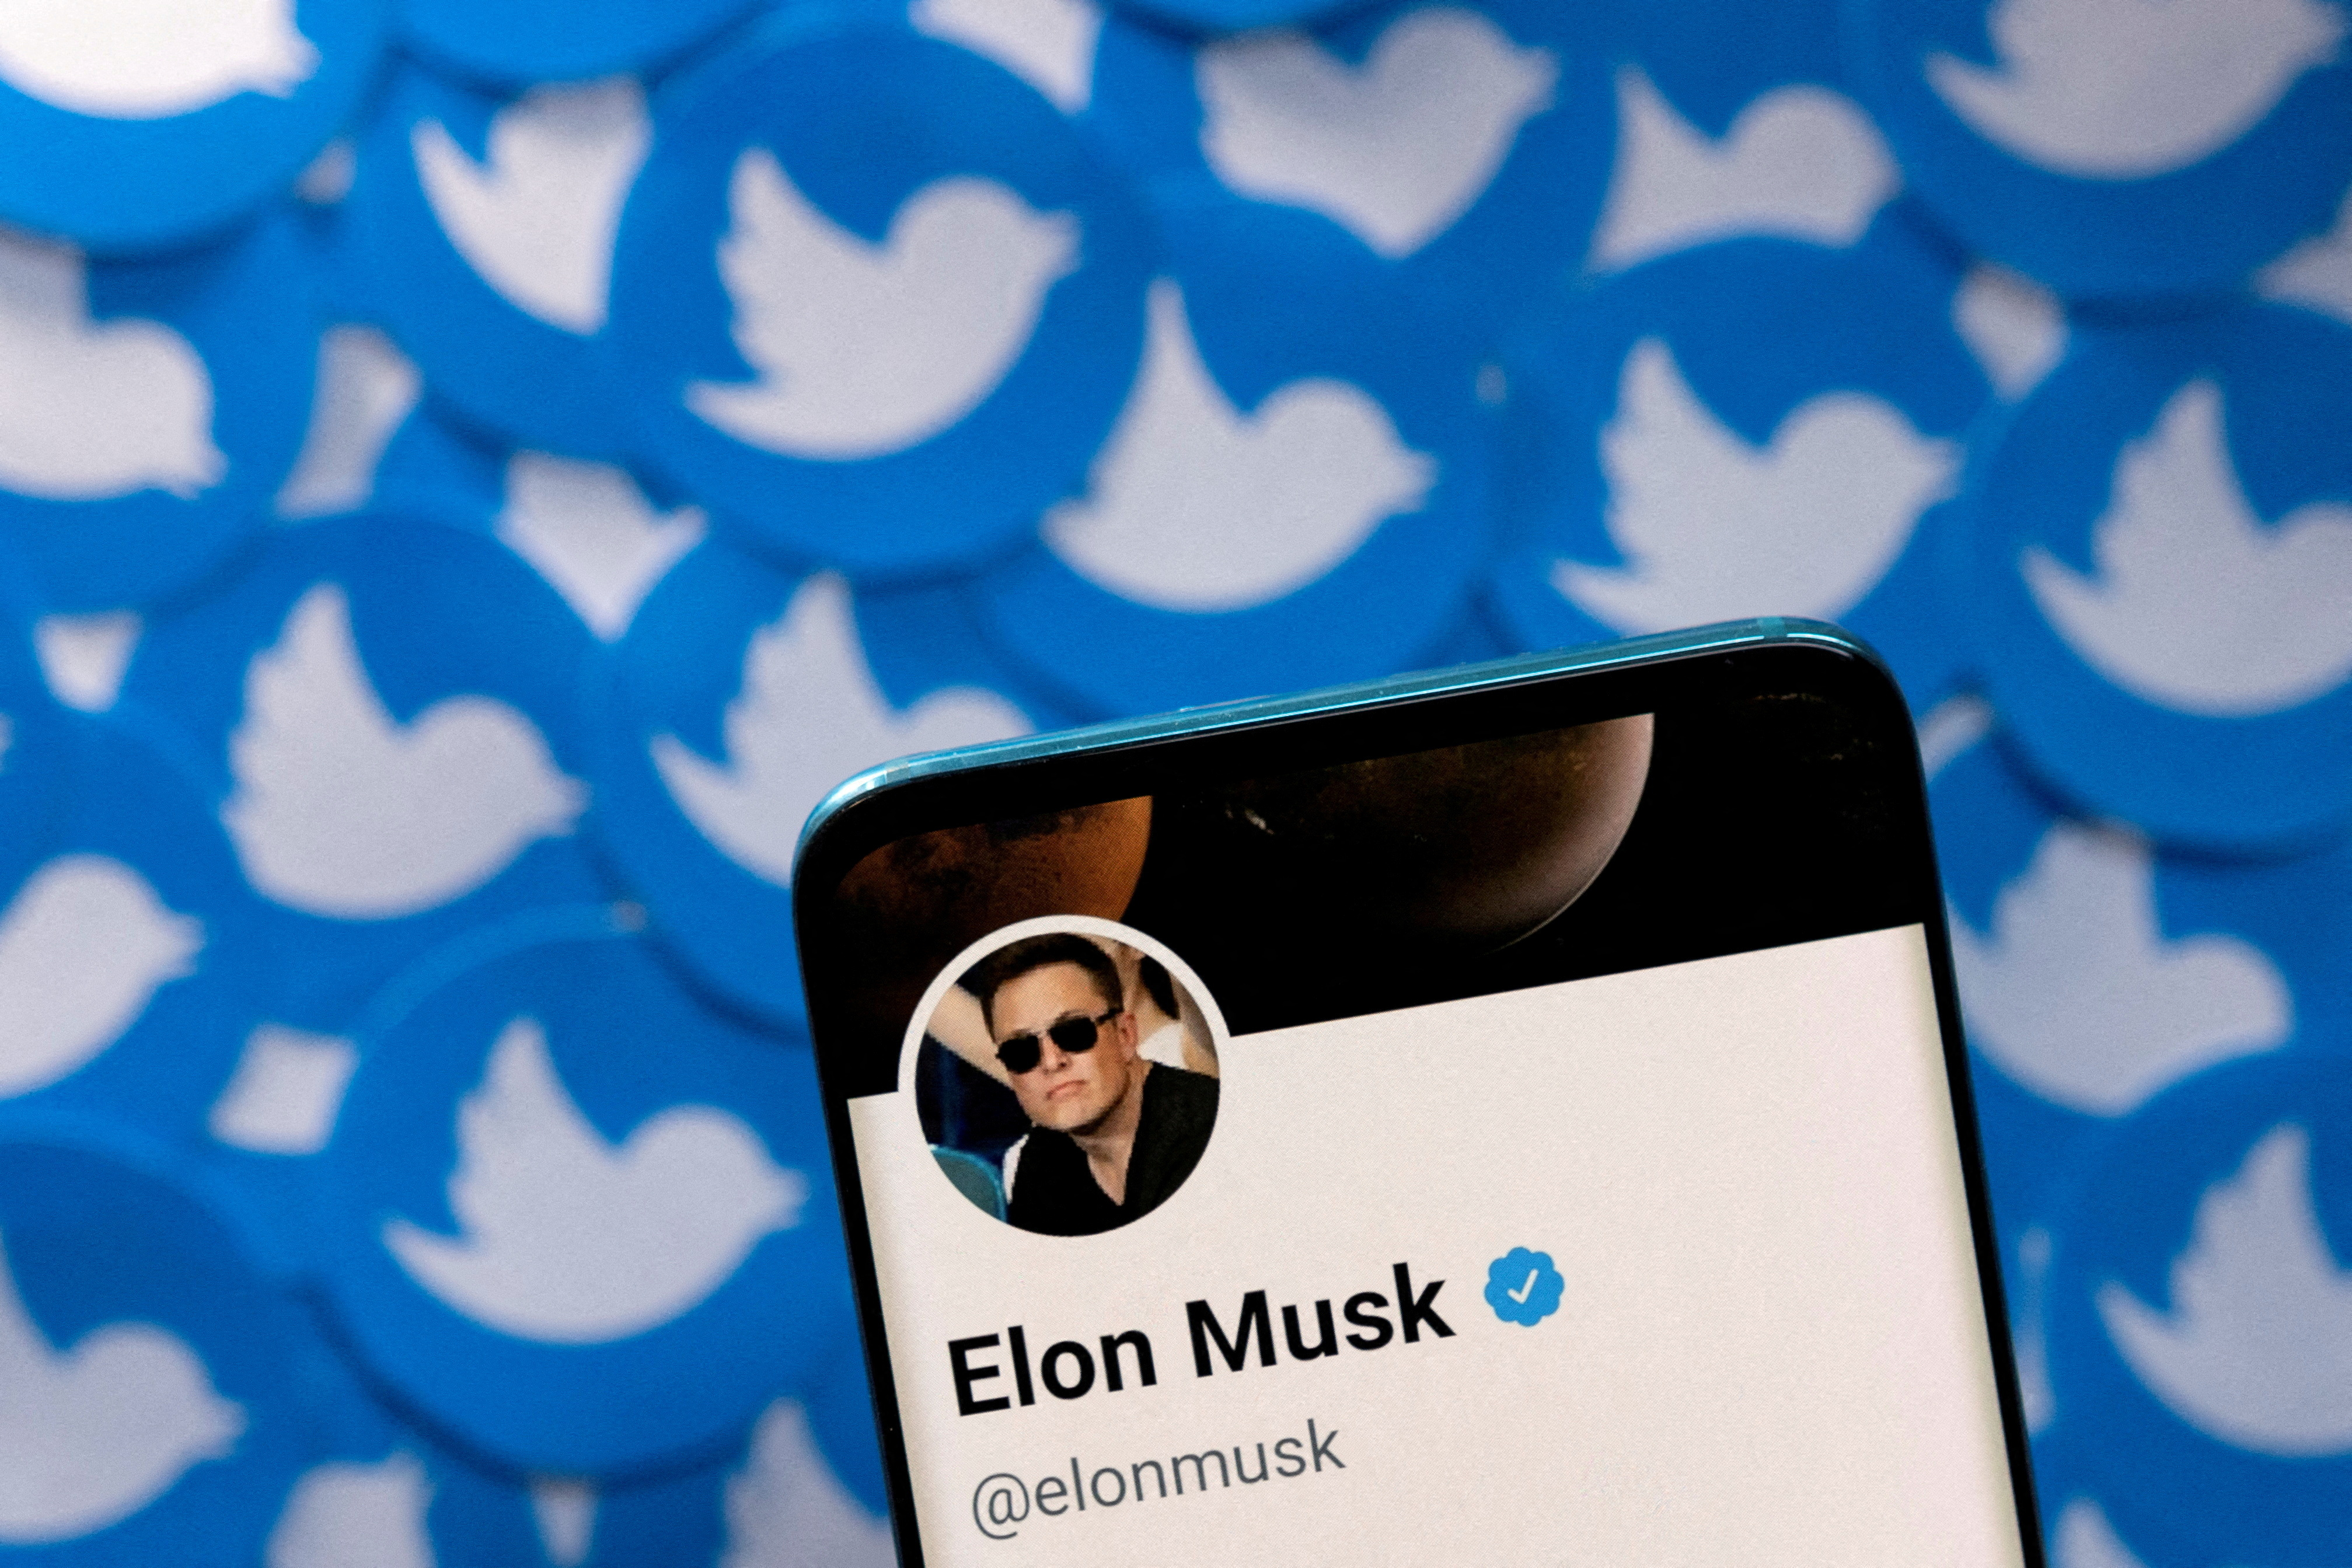 L'illustrazione mostra il profilo Twitter di Elon Musk su uno smartphone e i loghi di Twitter stampati